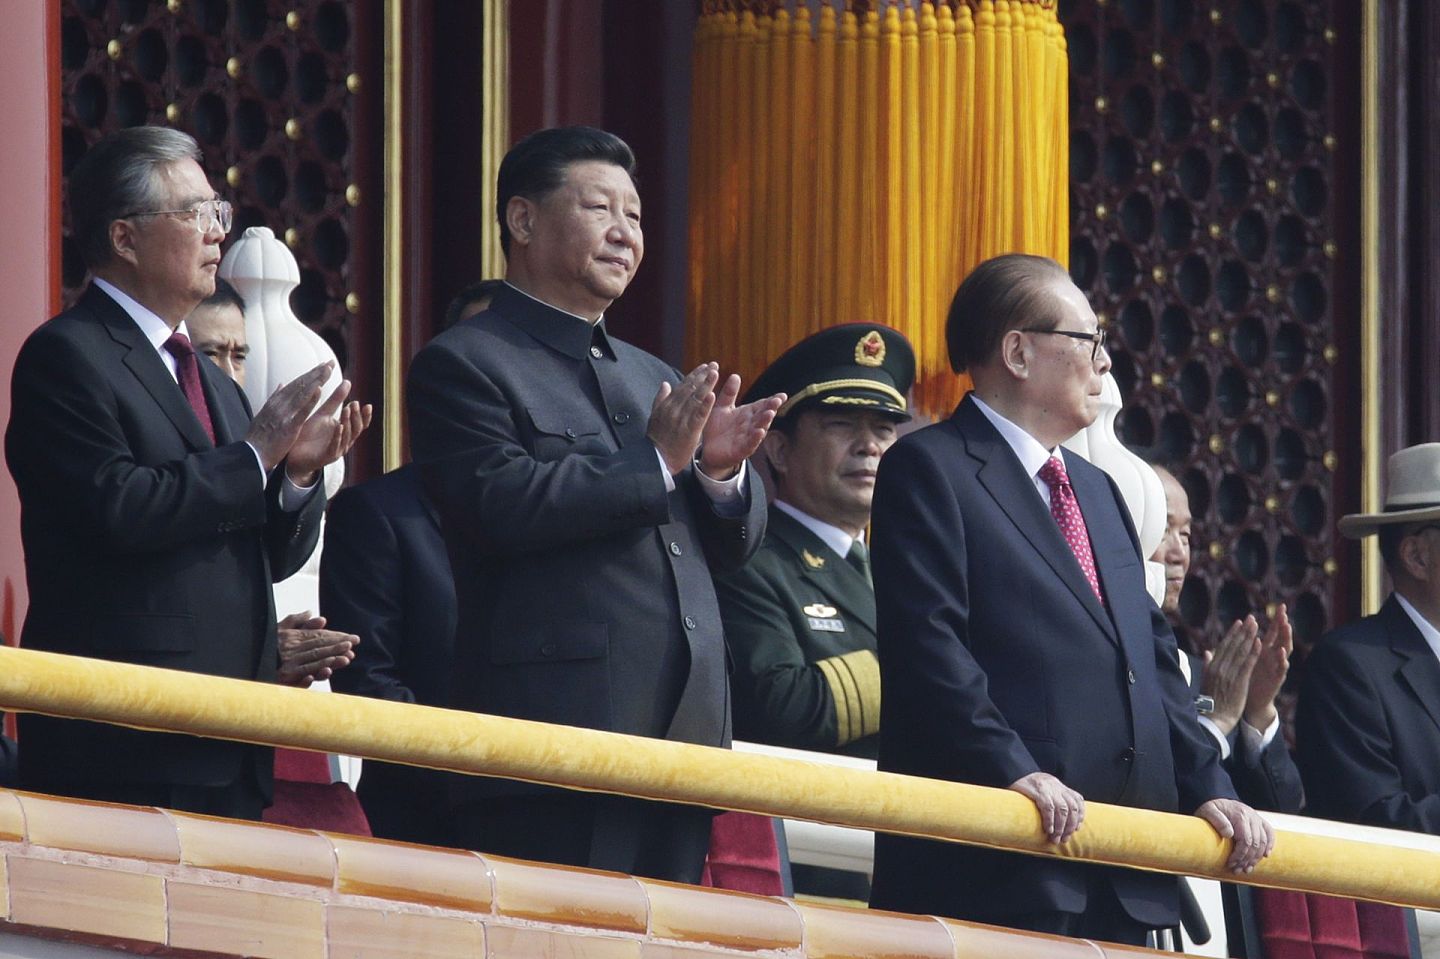 2019年10月1日，中共建政70周年阅兵式在北京举行，习近平在前中共领导人江泽民旁边鼓掌。（路透社）